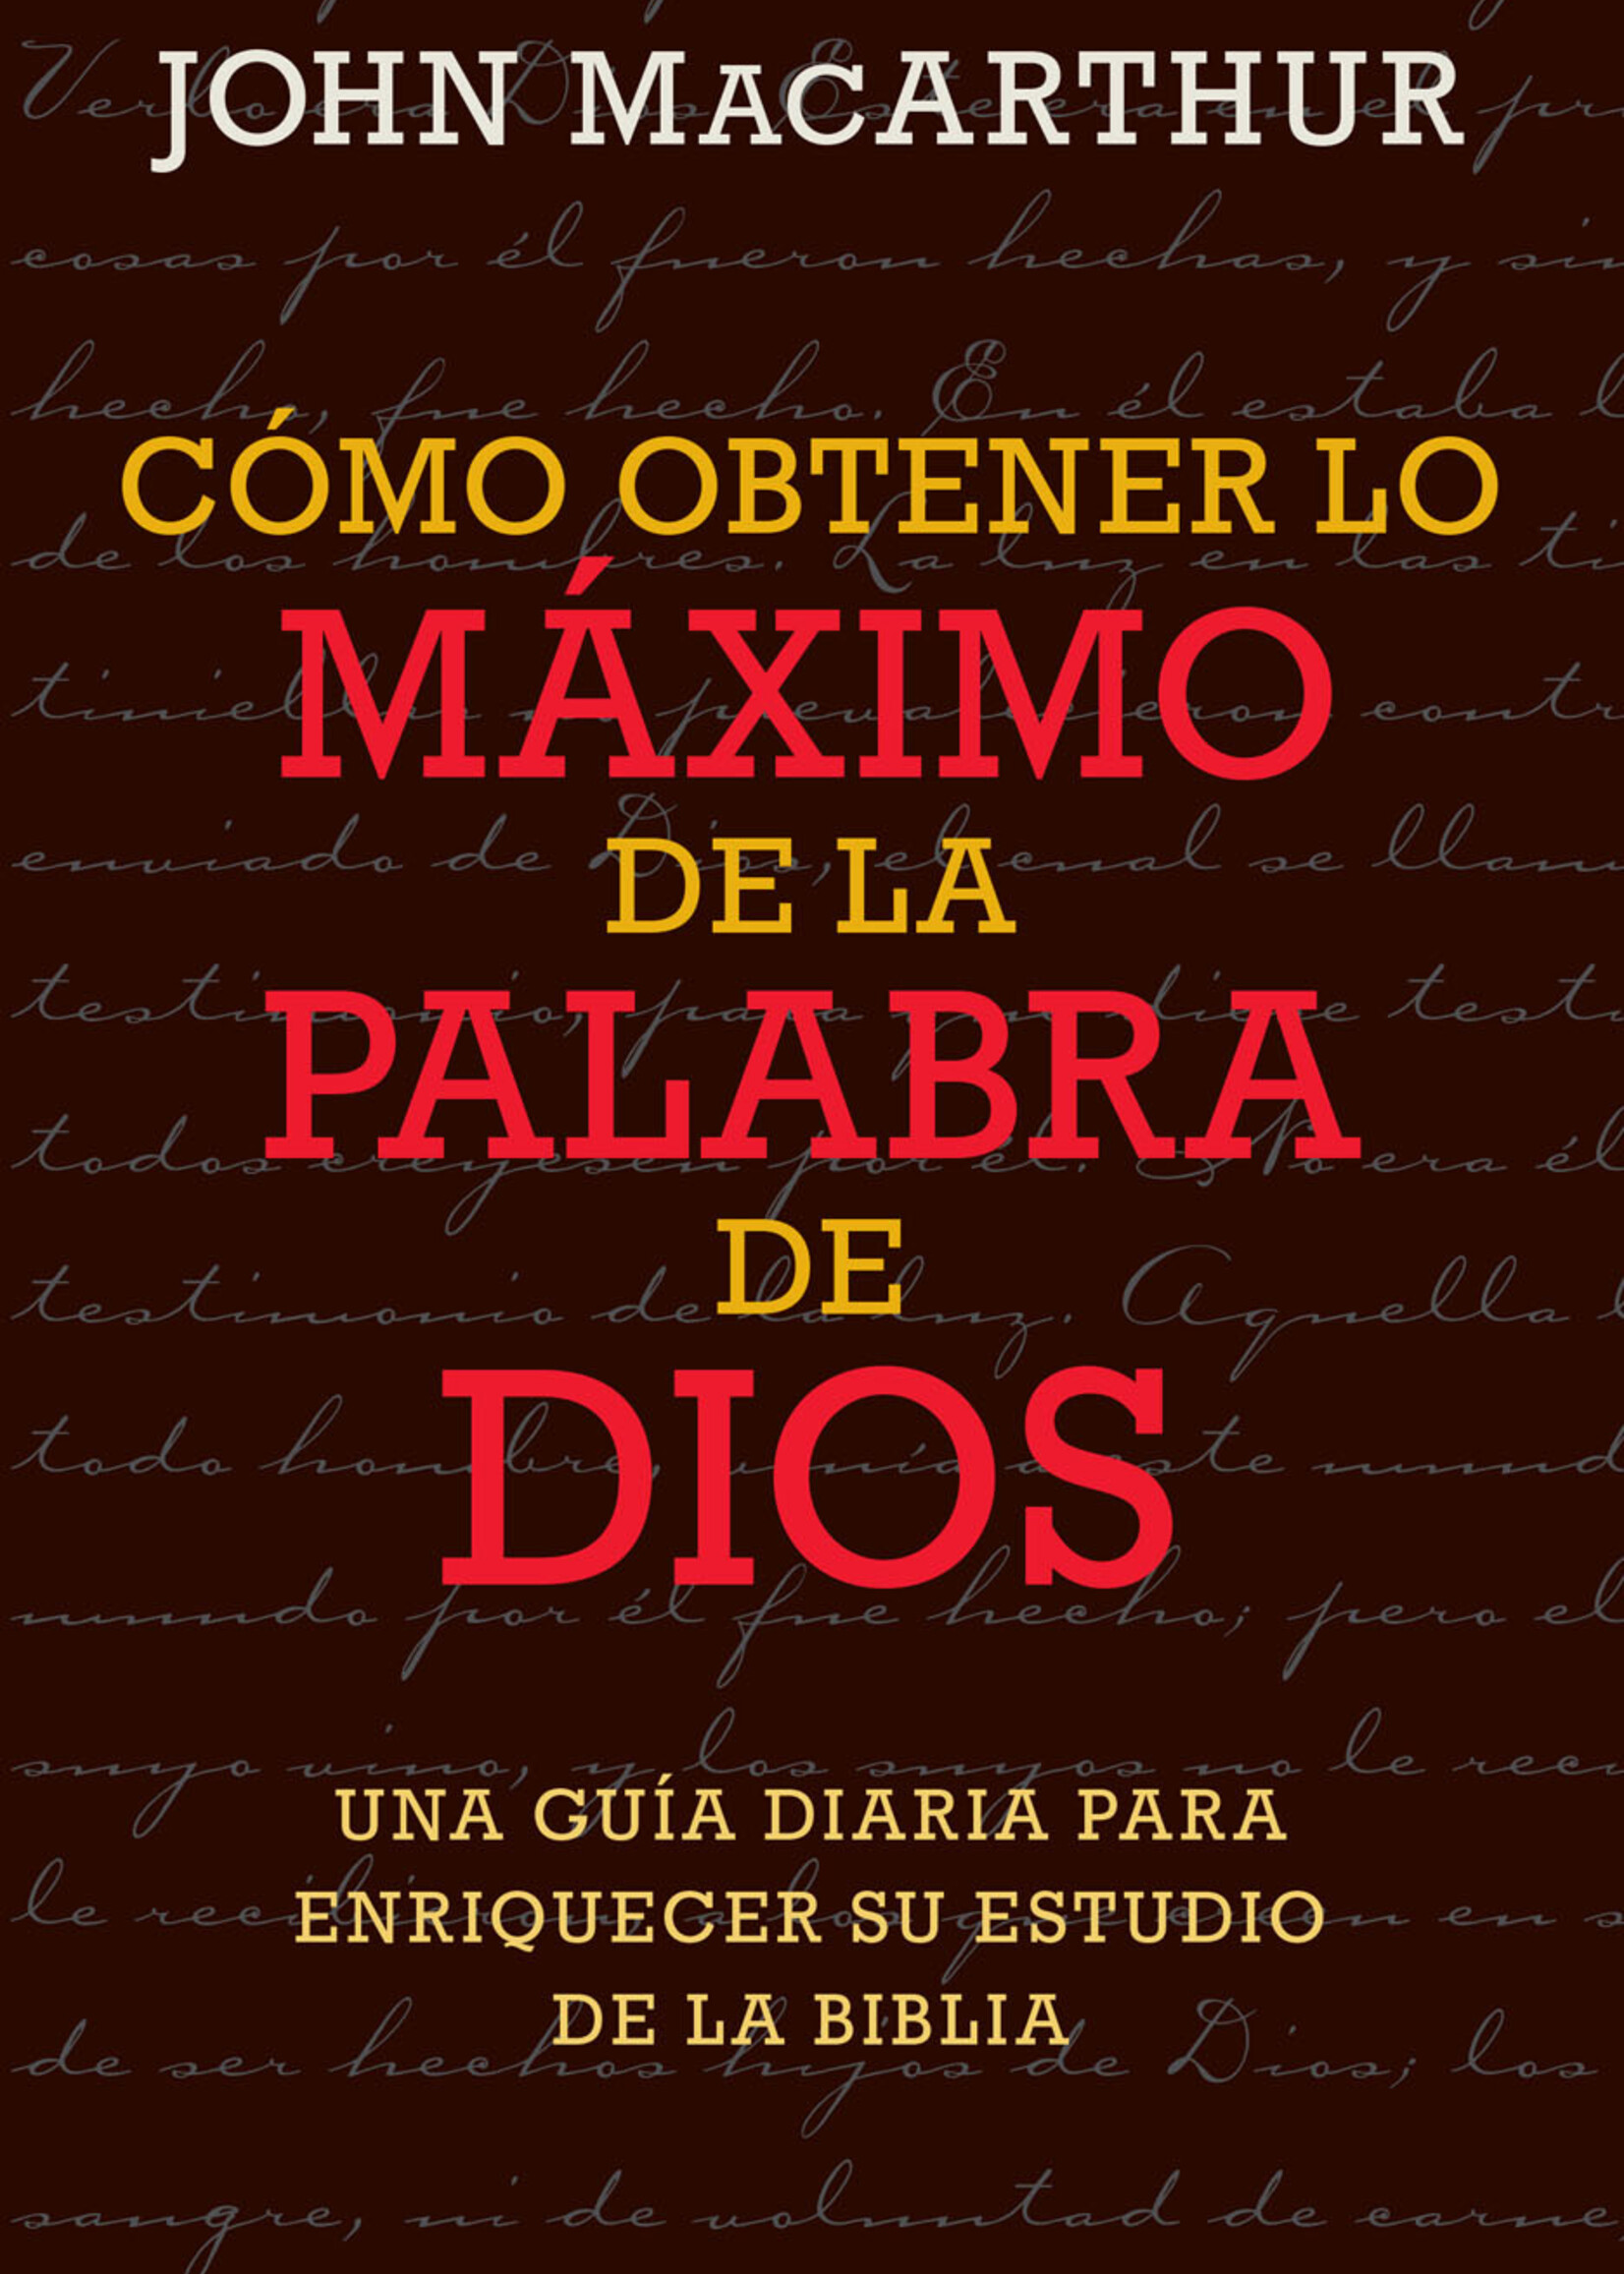 PORTAVOZ COMO OBTENER LO MAXIMO DE LA PALABRA DE DIOS